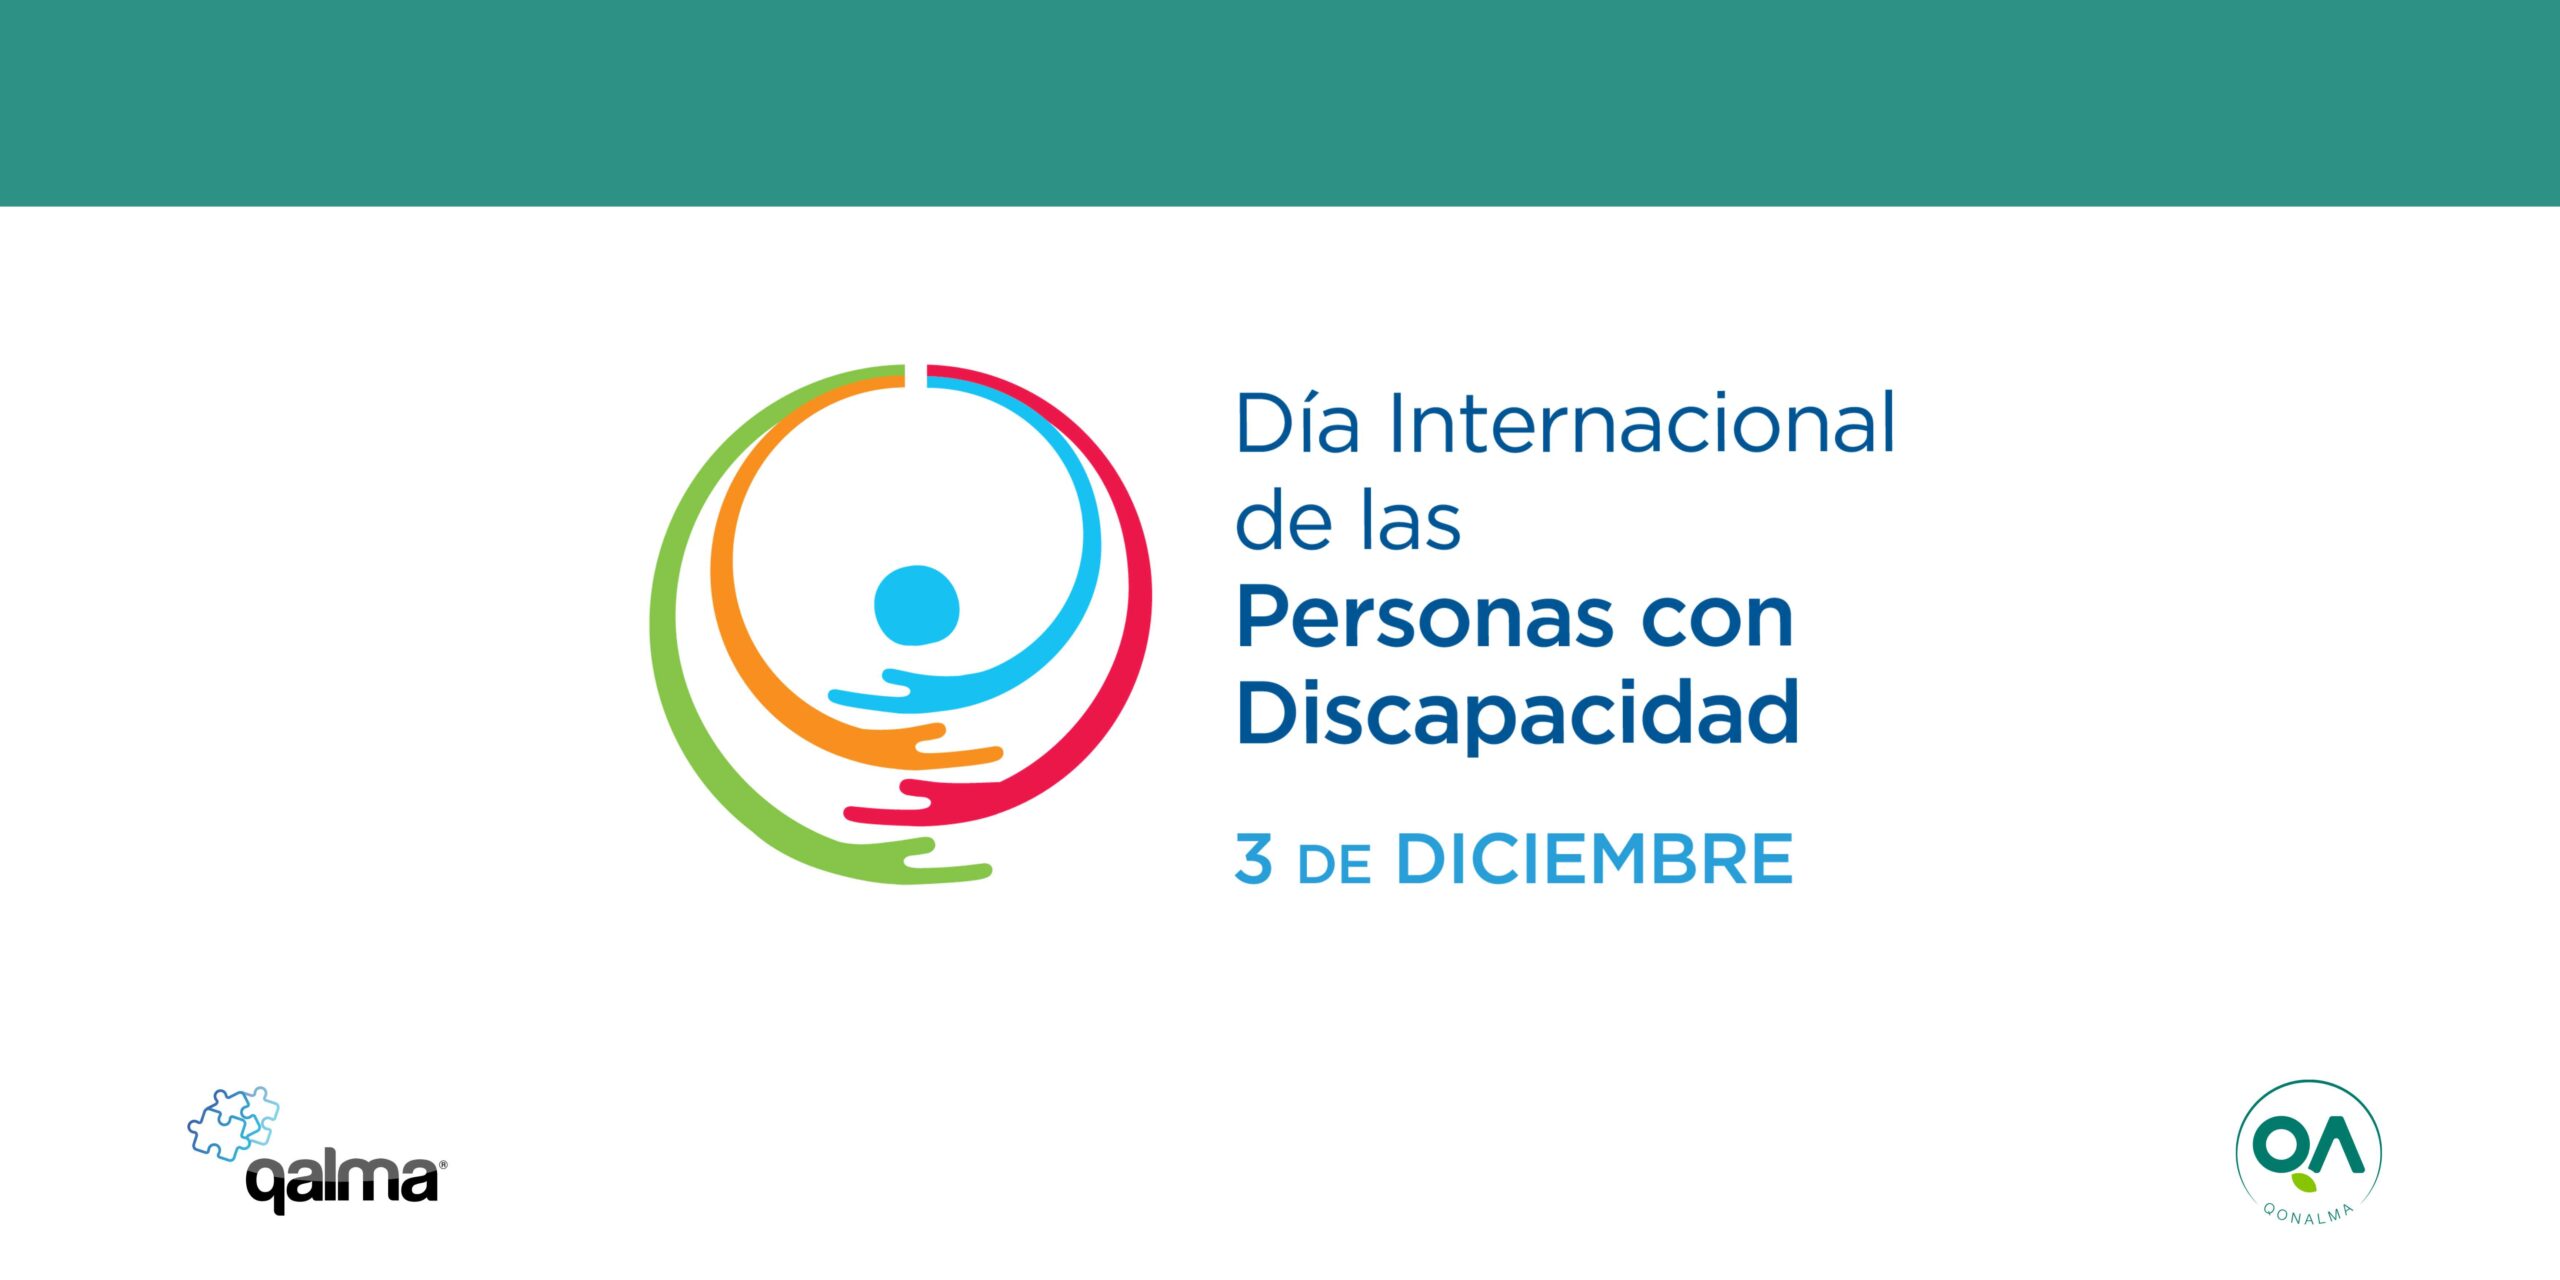 Dia internacional de las Personas con Discapacidad